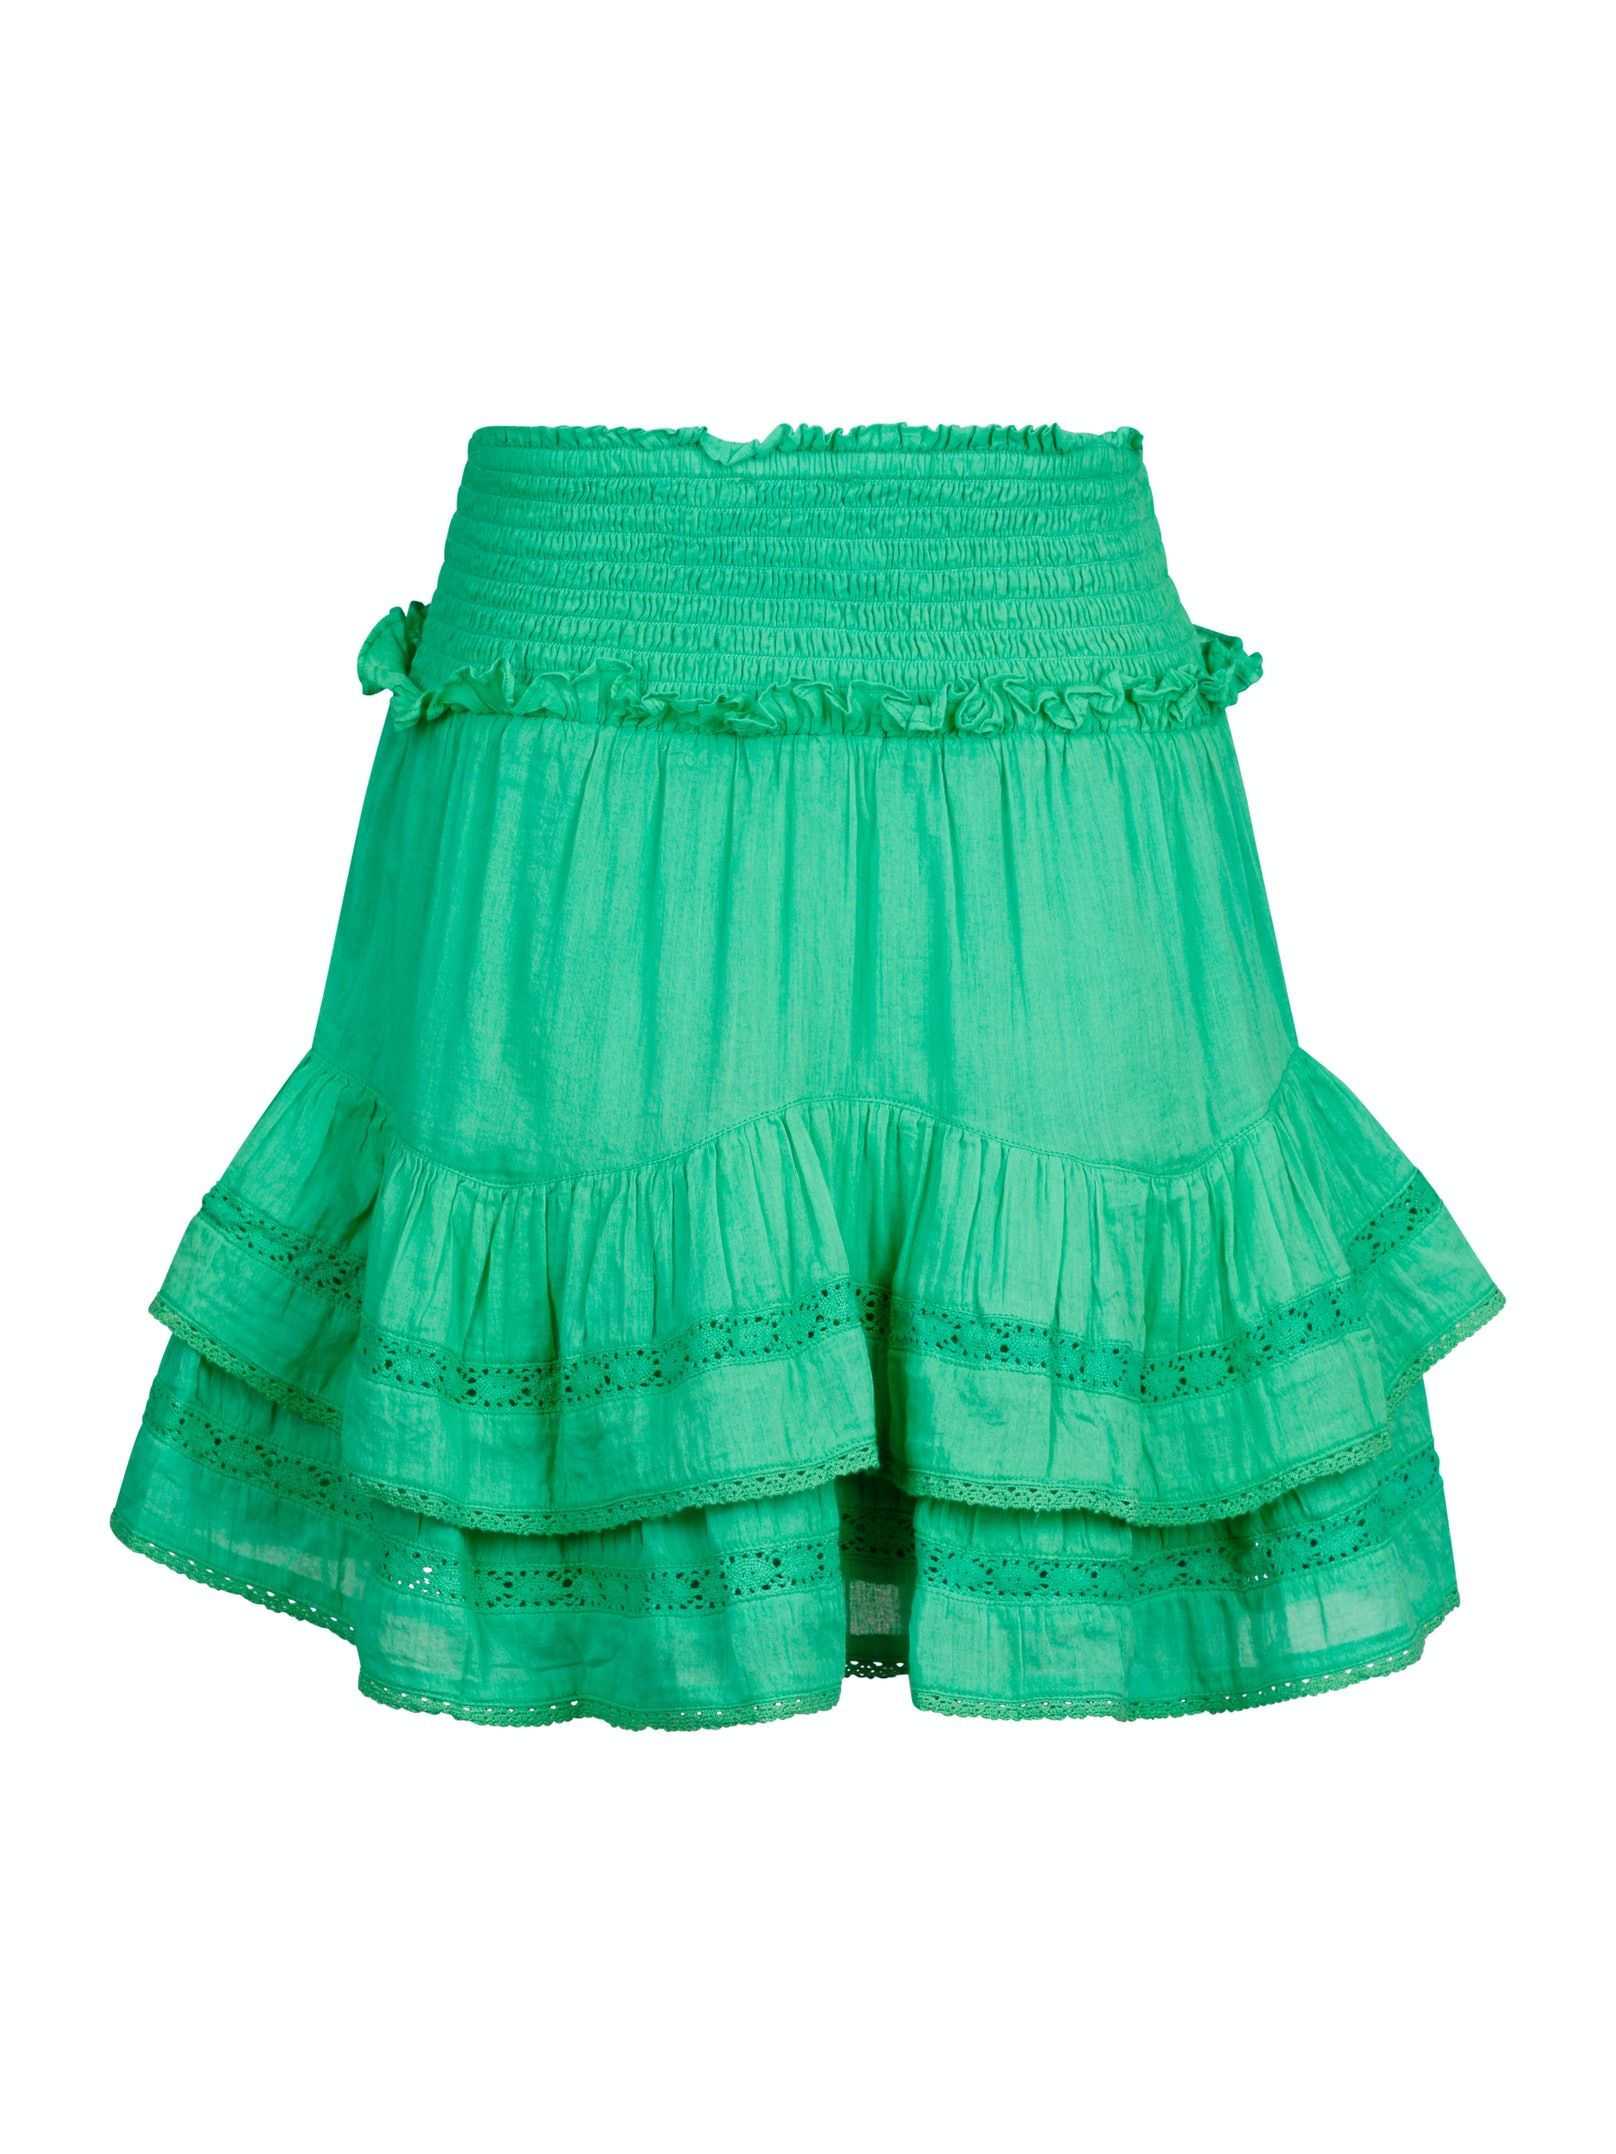 Marna S Voile Skirt - Soft Green